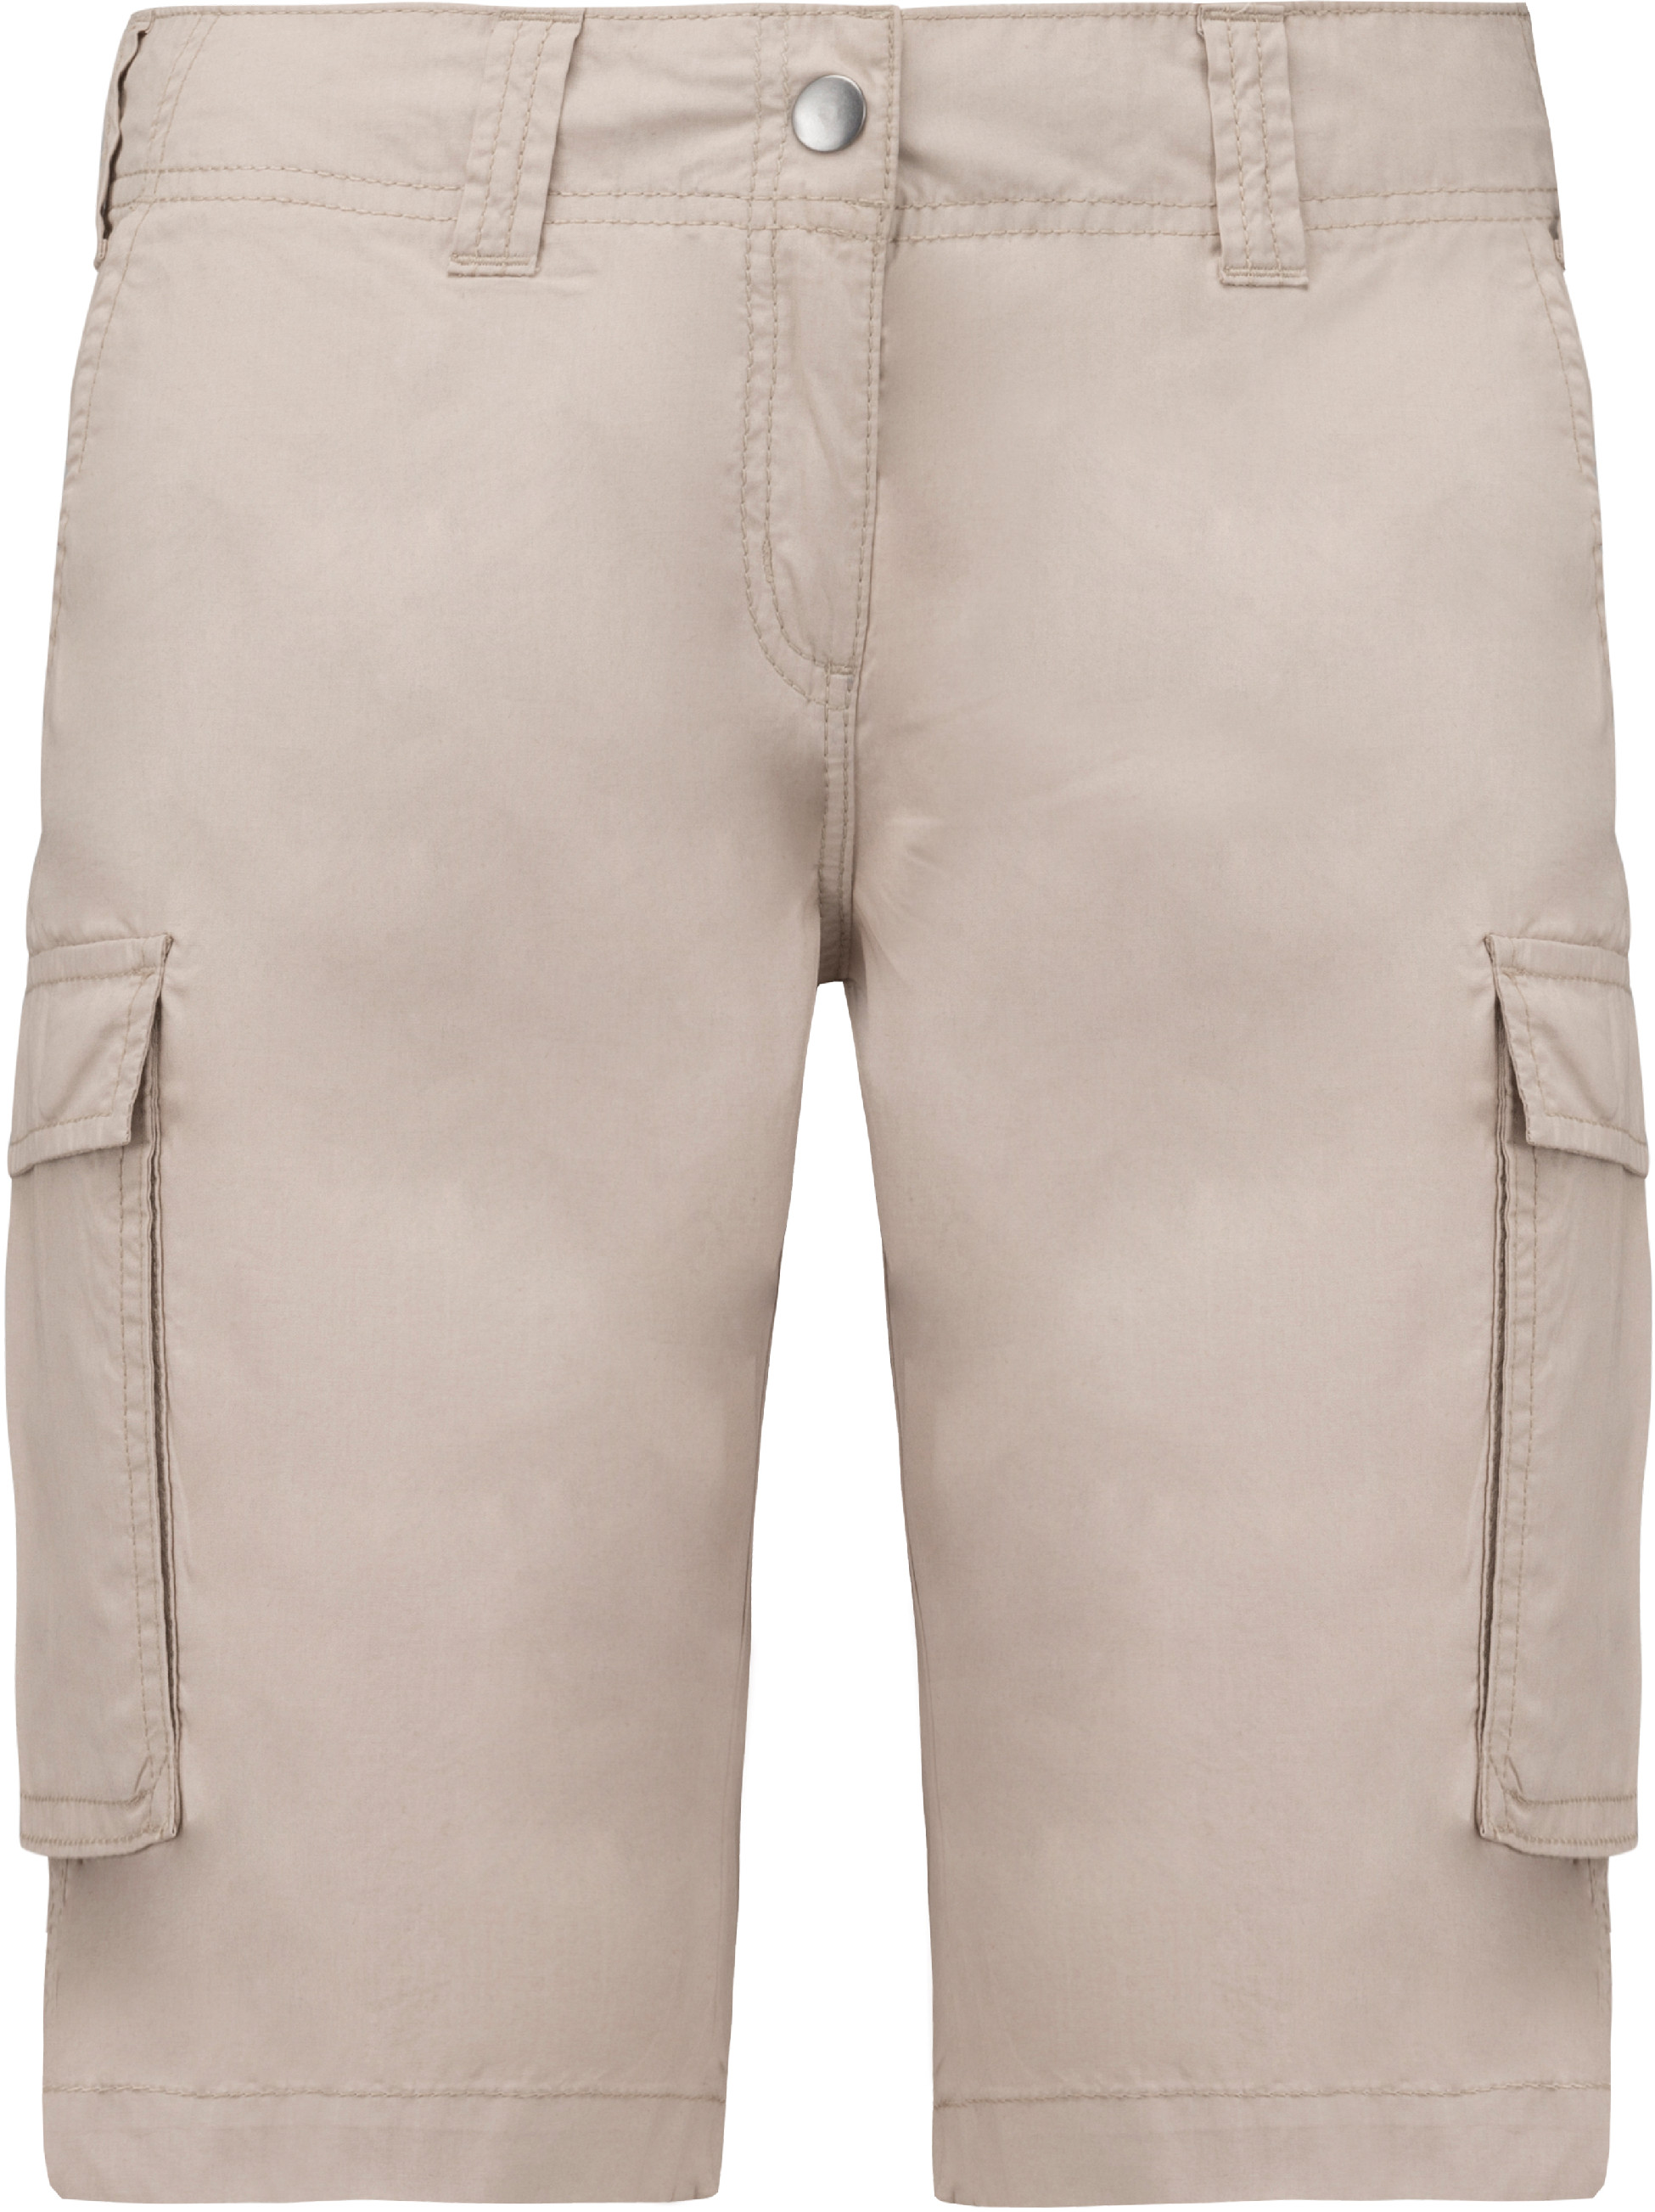 Dámské šortky s kapsami - Bermudy K756 Barva: naturální, Velikost: 34